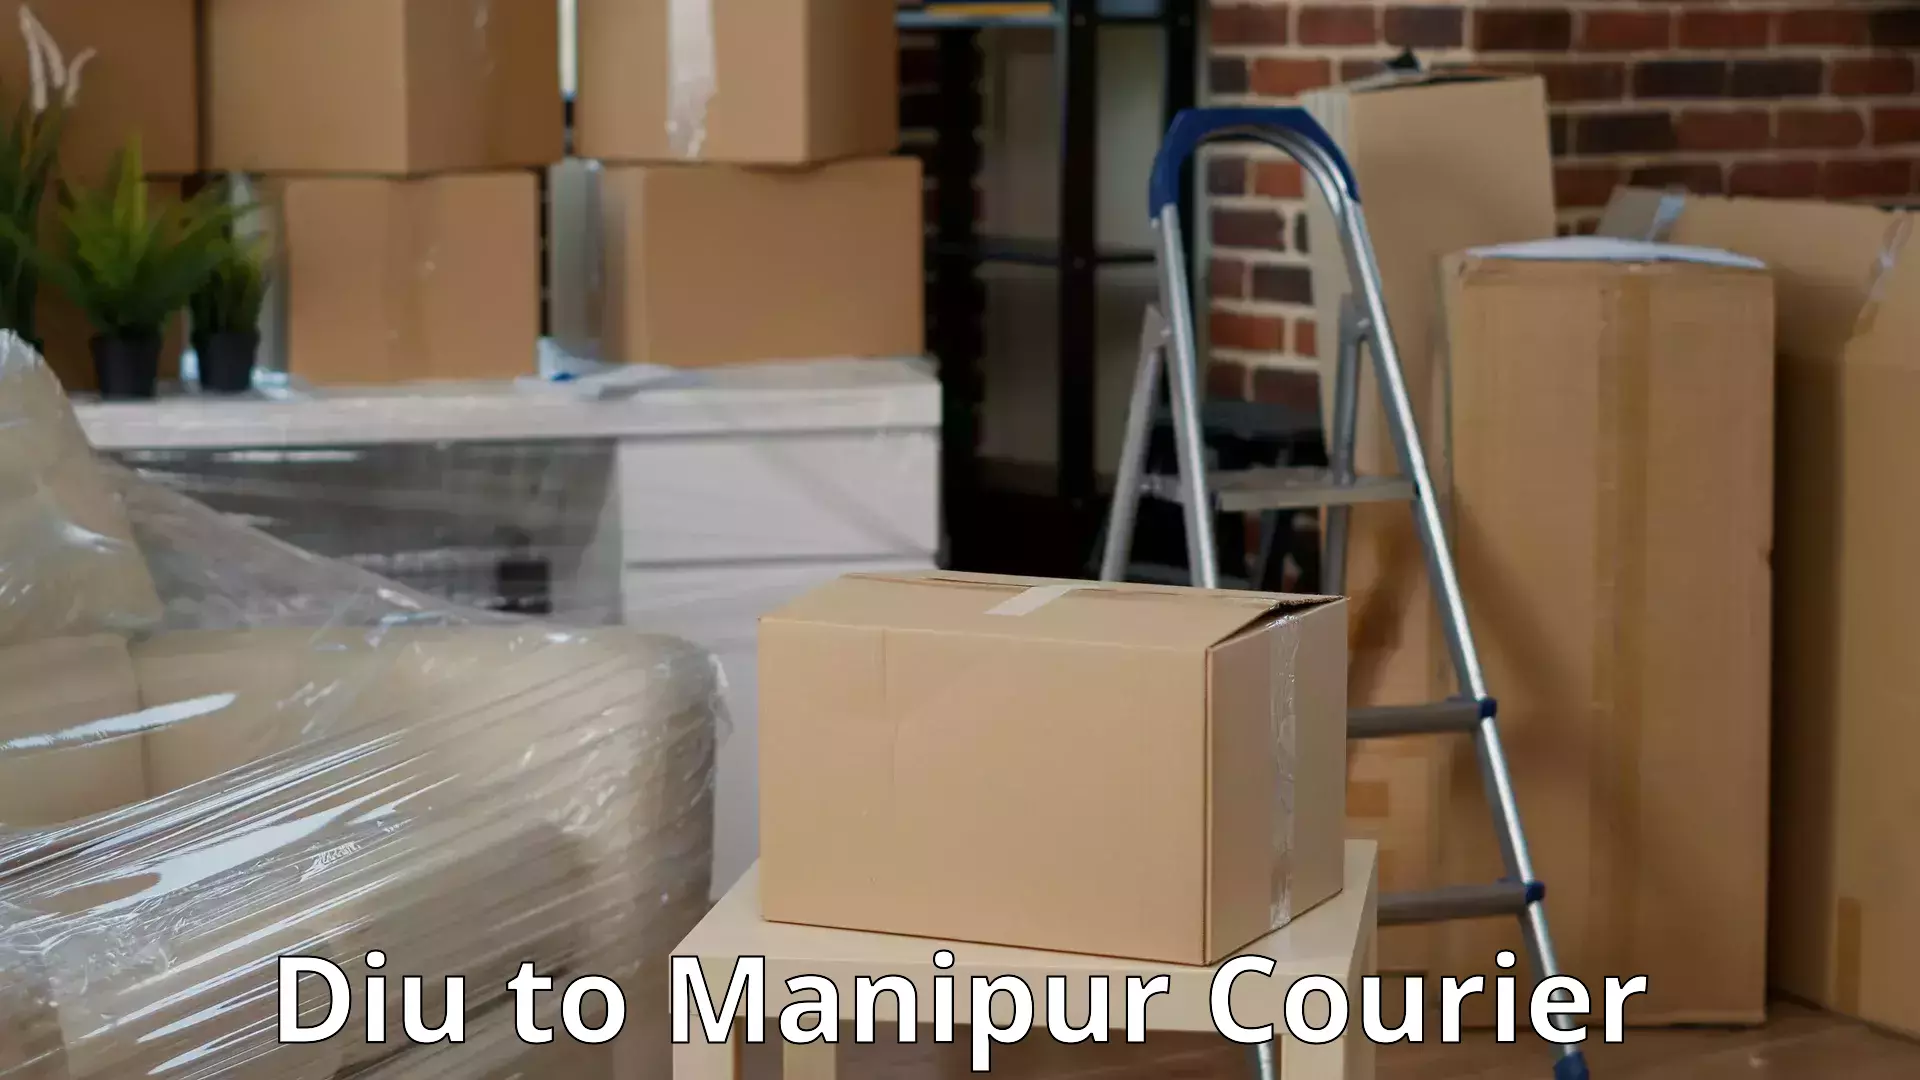 Furniture moving service Diu to Manipur